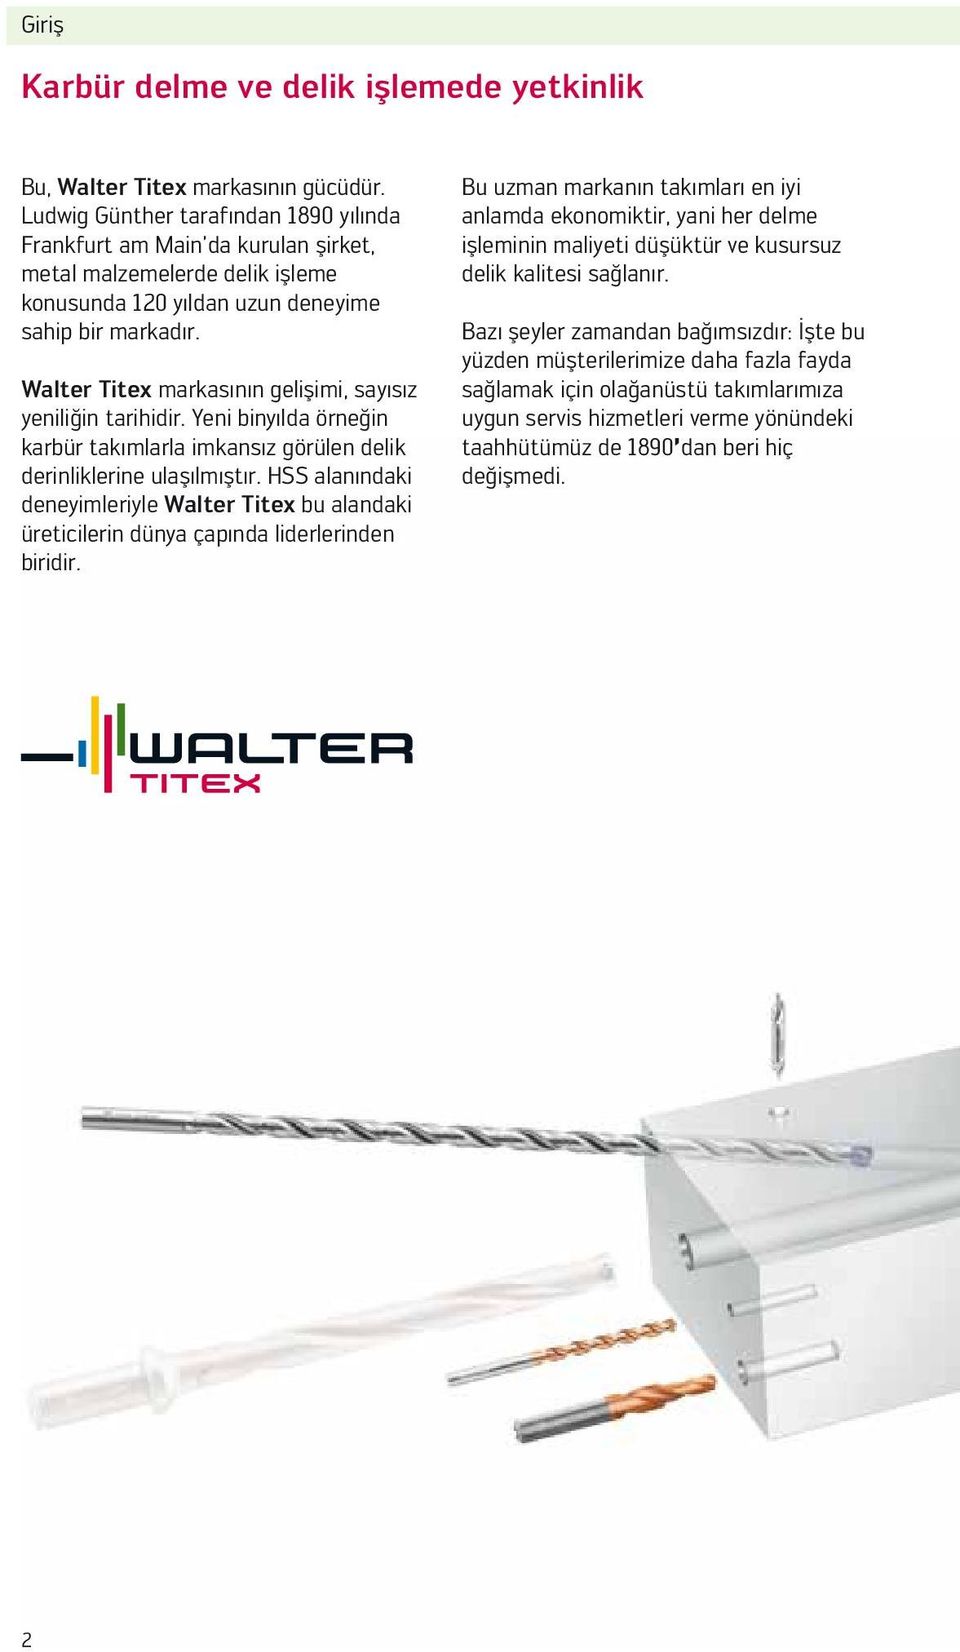 Walter Titex markasının gelişimi, sayısız yeniliğin tarihidir. Yeni binyılda örneğin karbür takımlarla imkansız görülen delik derinliklerine ulaşılmıştır.